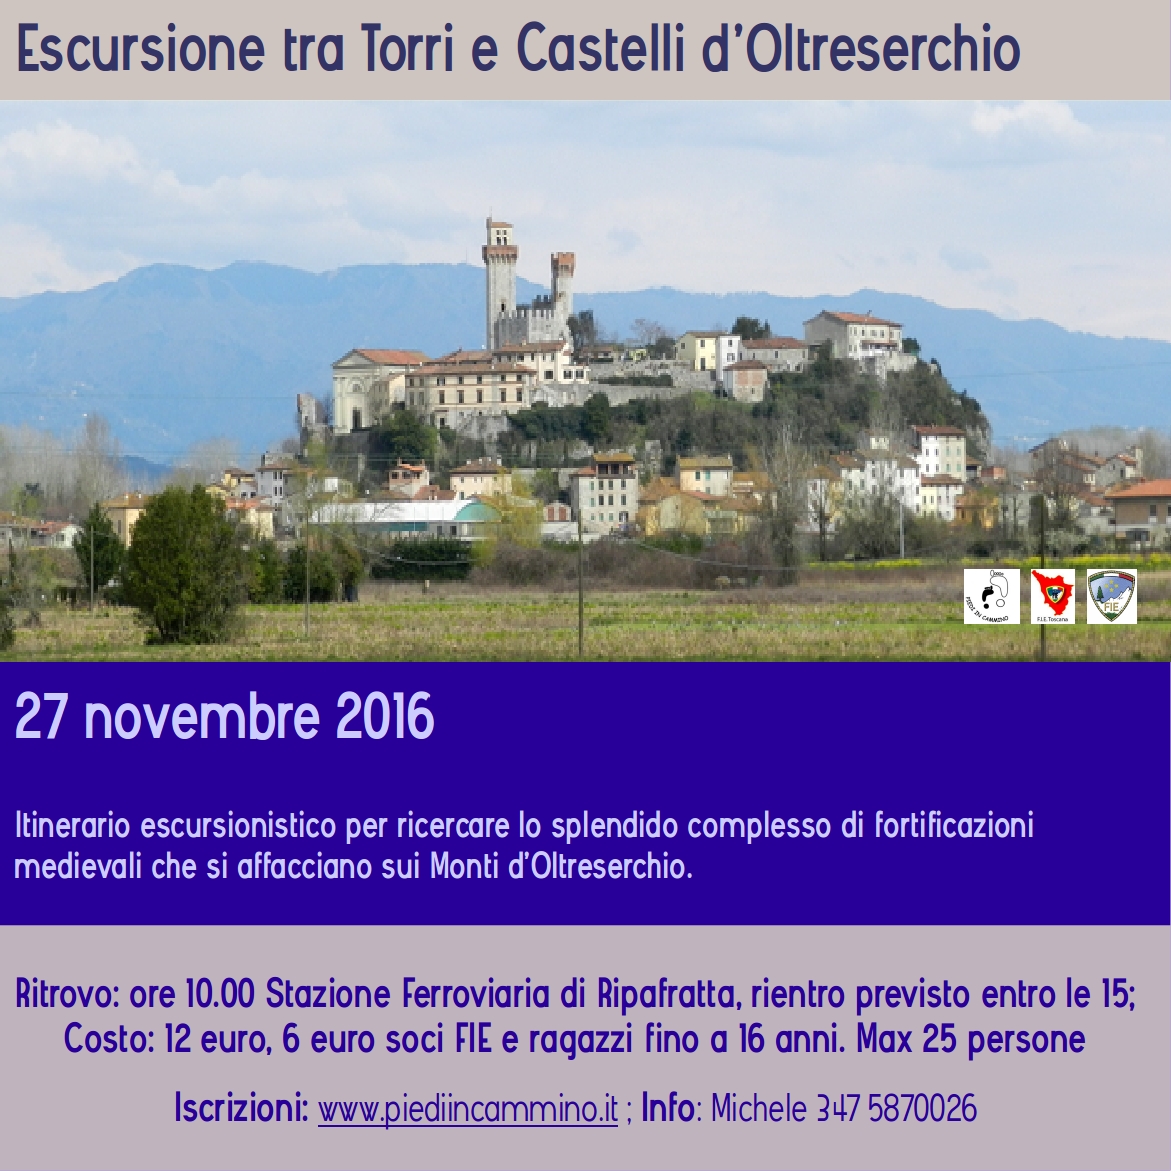 Escursione tra Torri e Castelli d'Oltreserchio